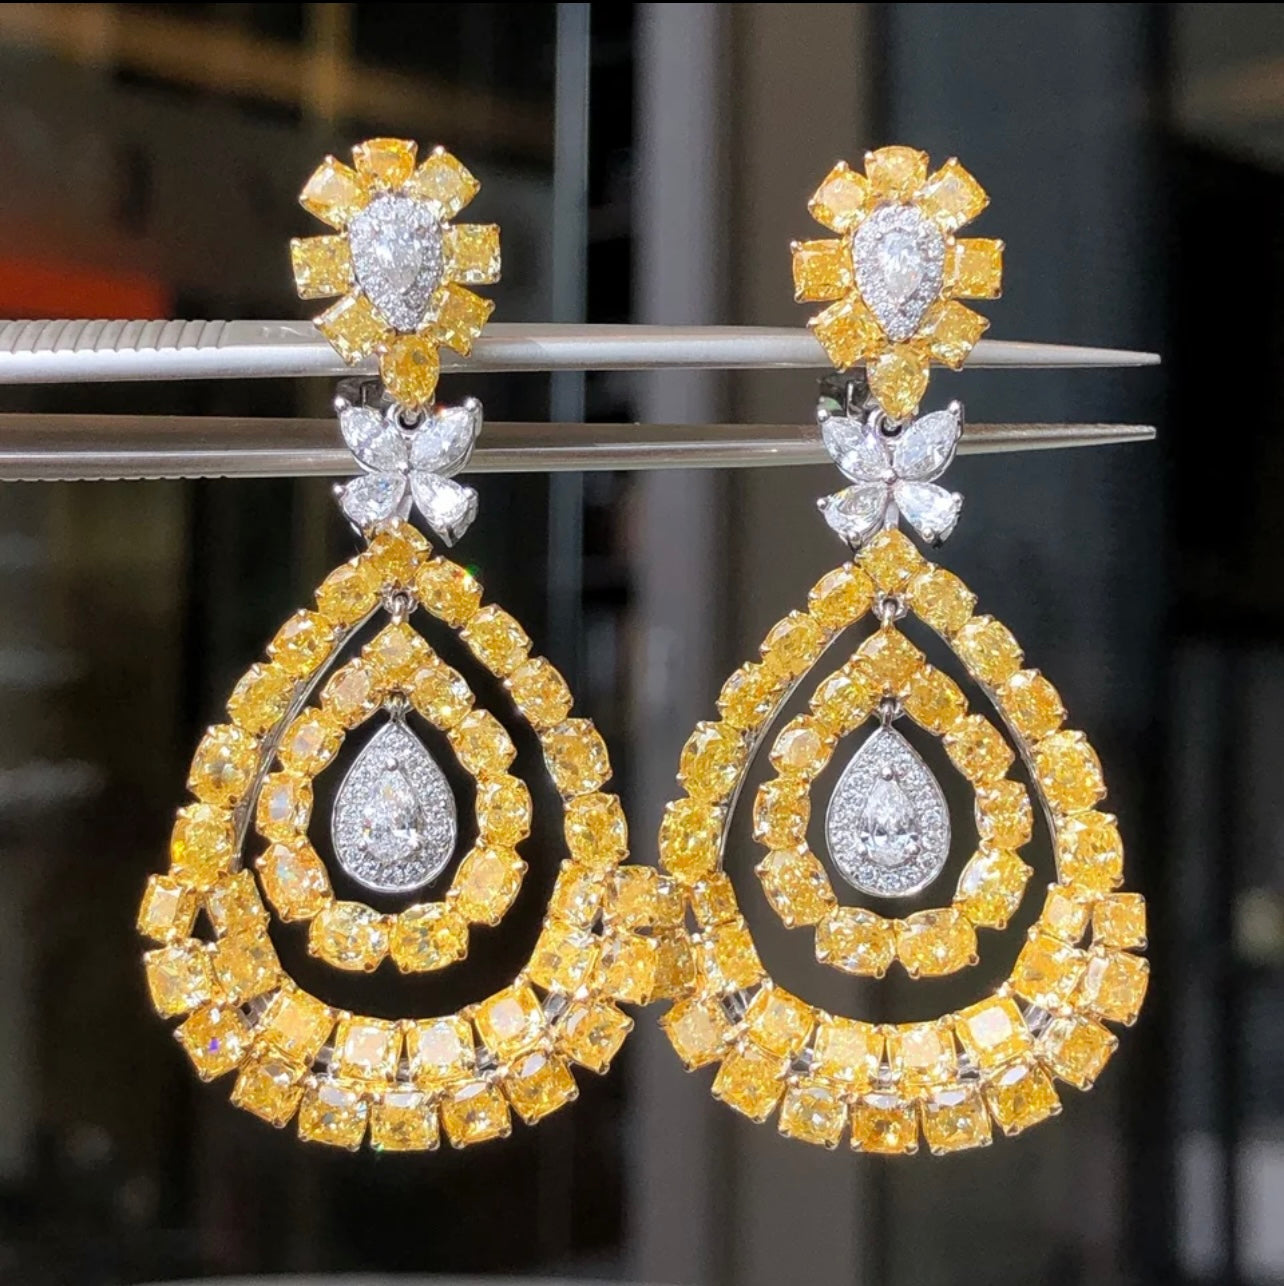 12.00 Carats Fancy Vivid Yellow Diamond Earrings Solid 18K WG Gold